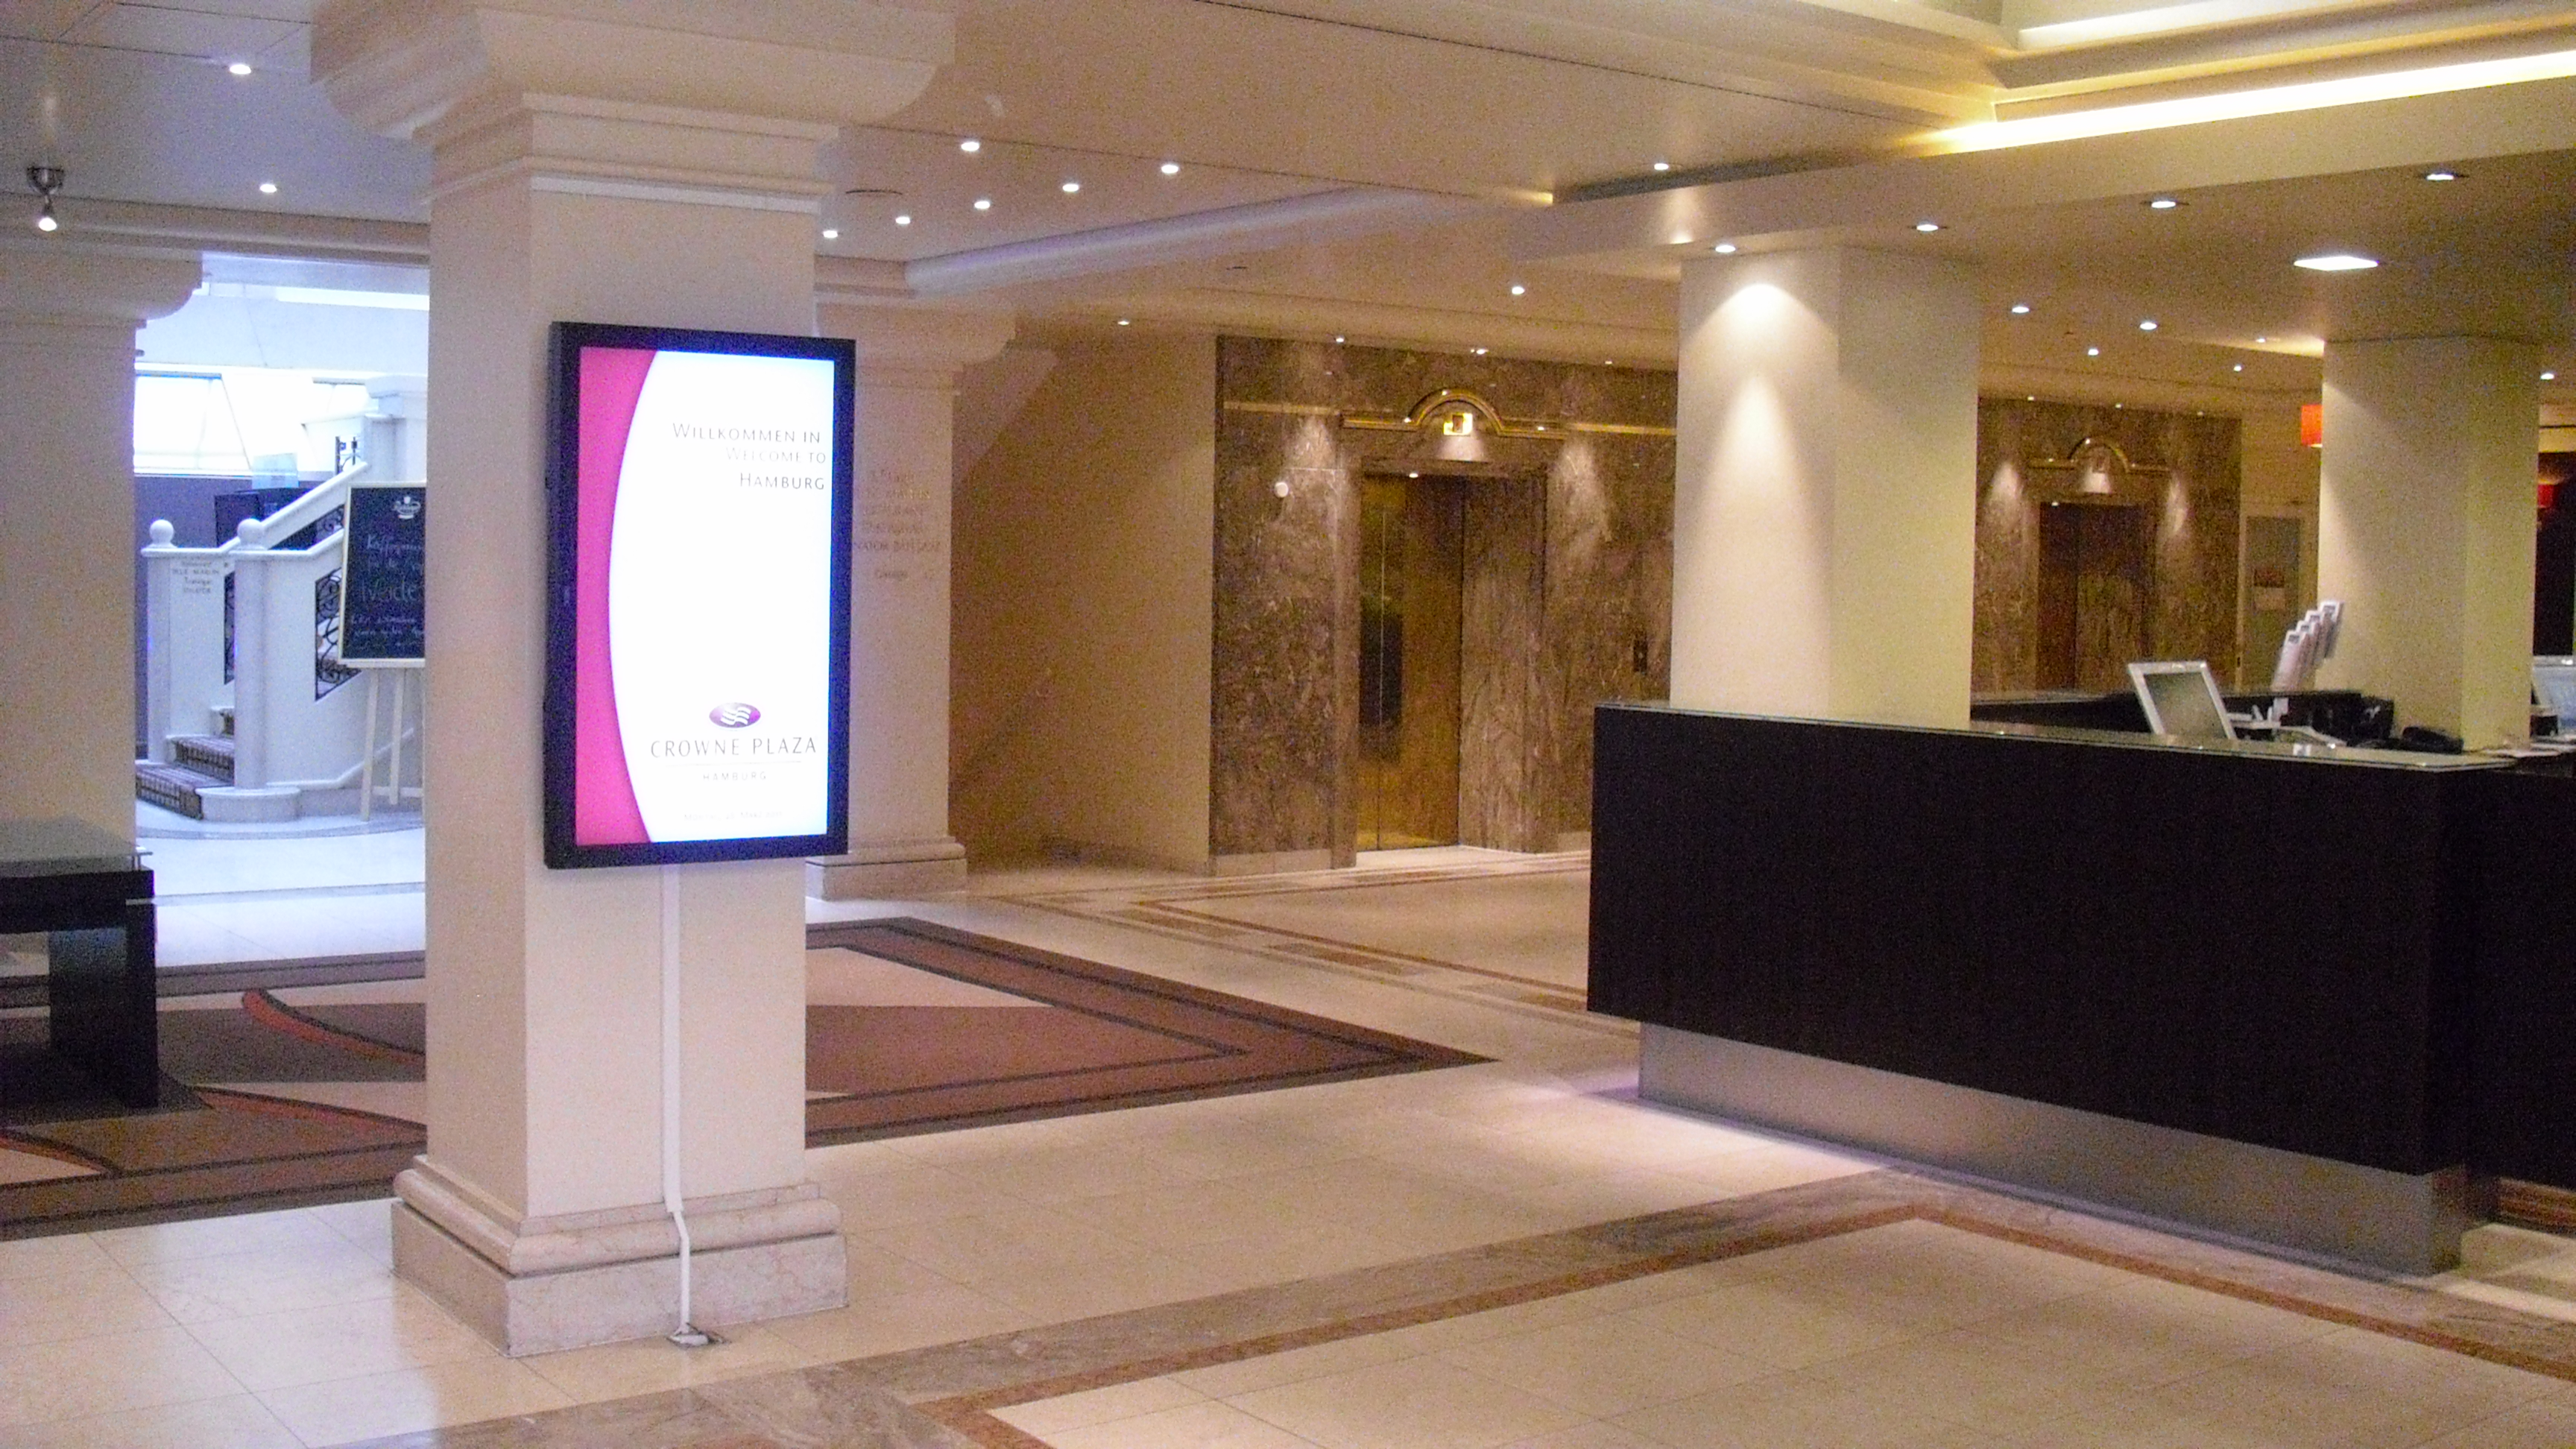 Eingangsbereich mit Rezeption, digitaler Anzeige und den Aufzügen